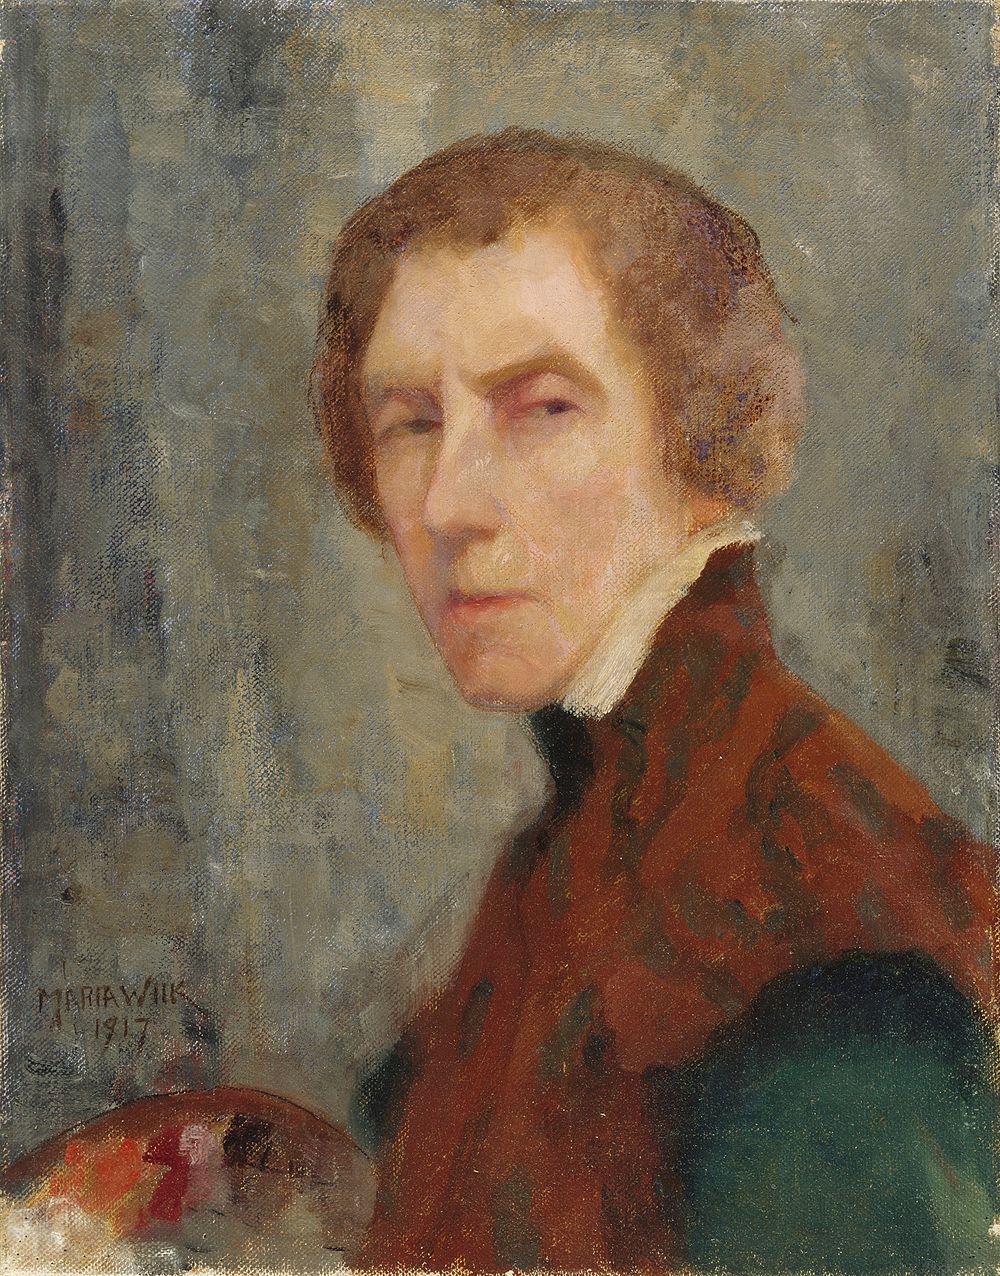 Self-portrait, 1917 by Maria Catharina Wiik